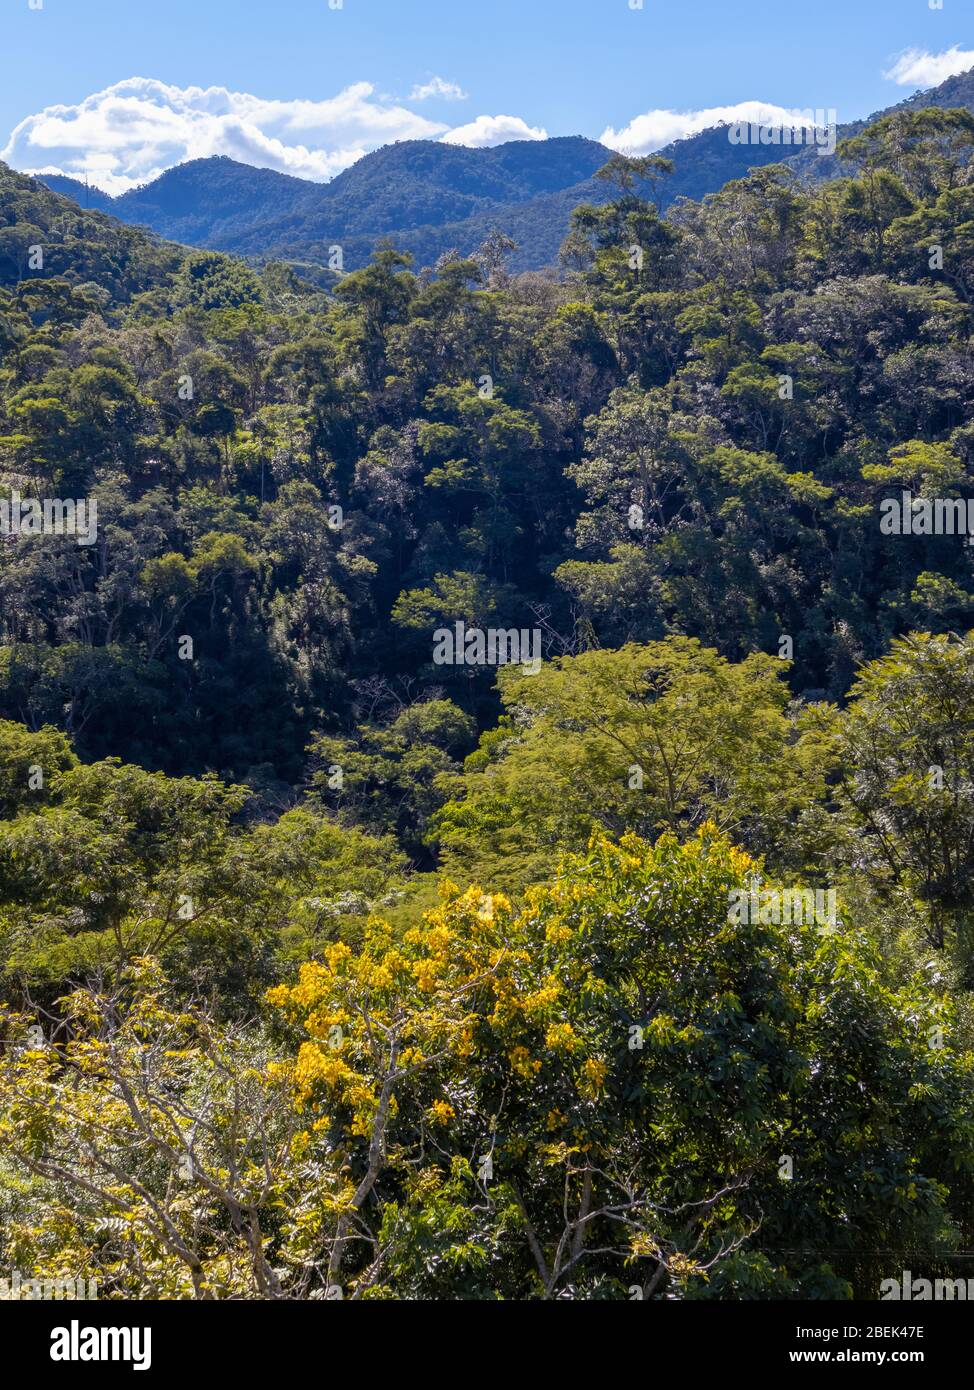 Vista generale della collina coperta dalla vegetazione della foresta atlantica, Areal, Rio de Janeiro, Brasile Foto Stock